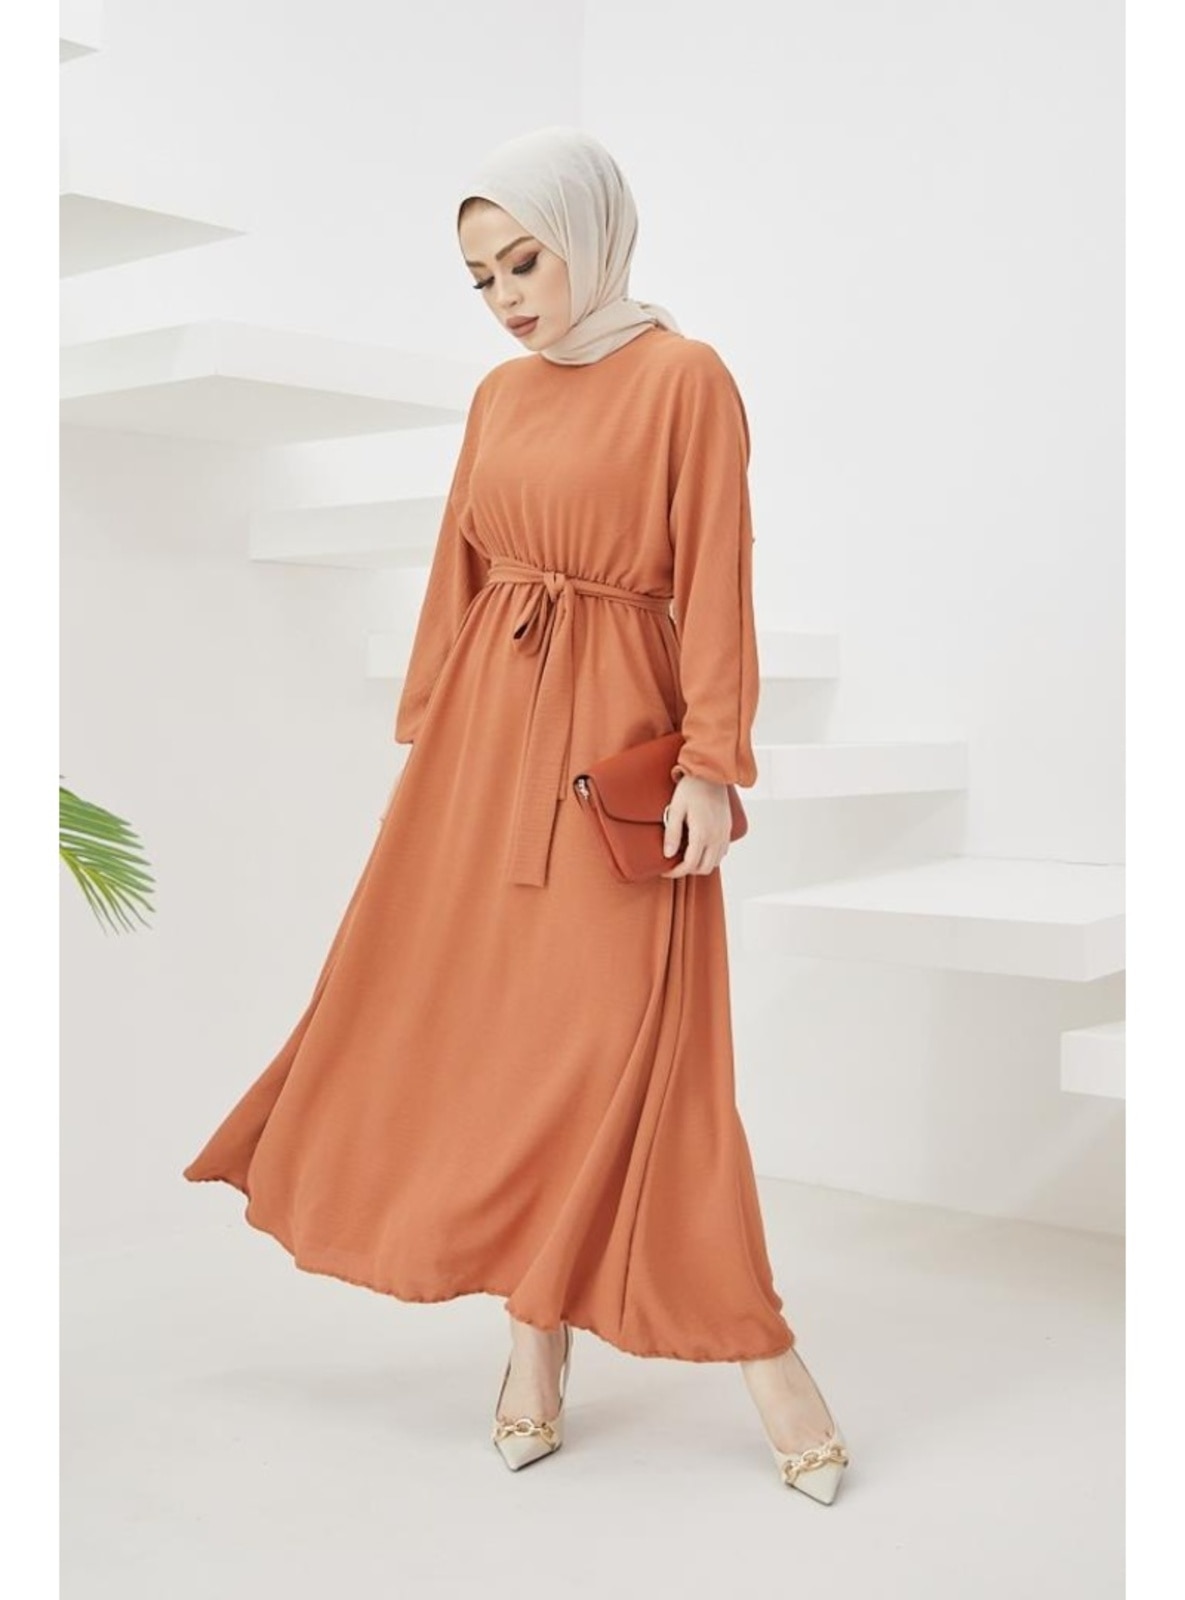 Terra Cotta - Modest Dress